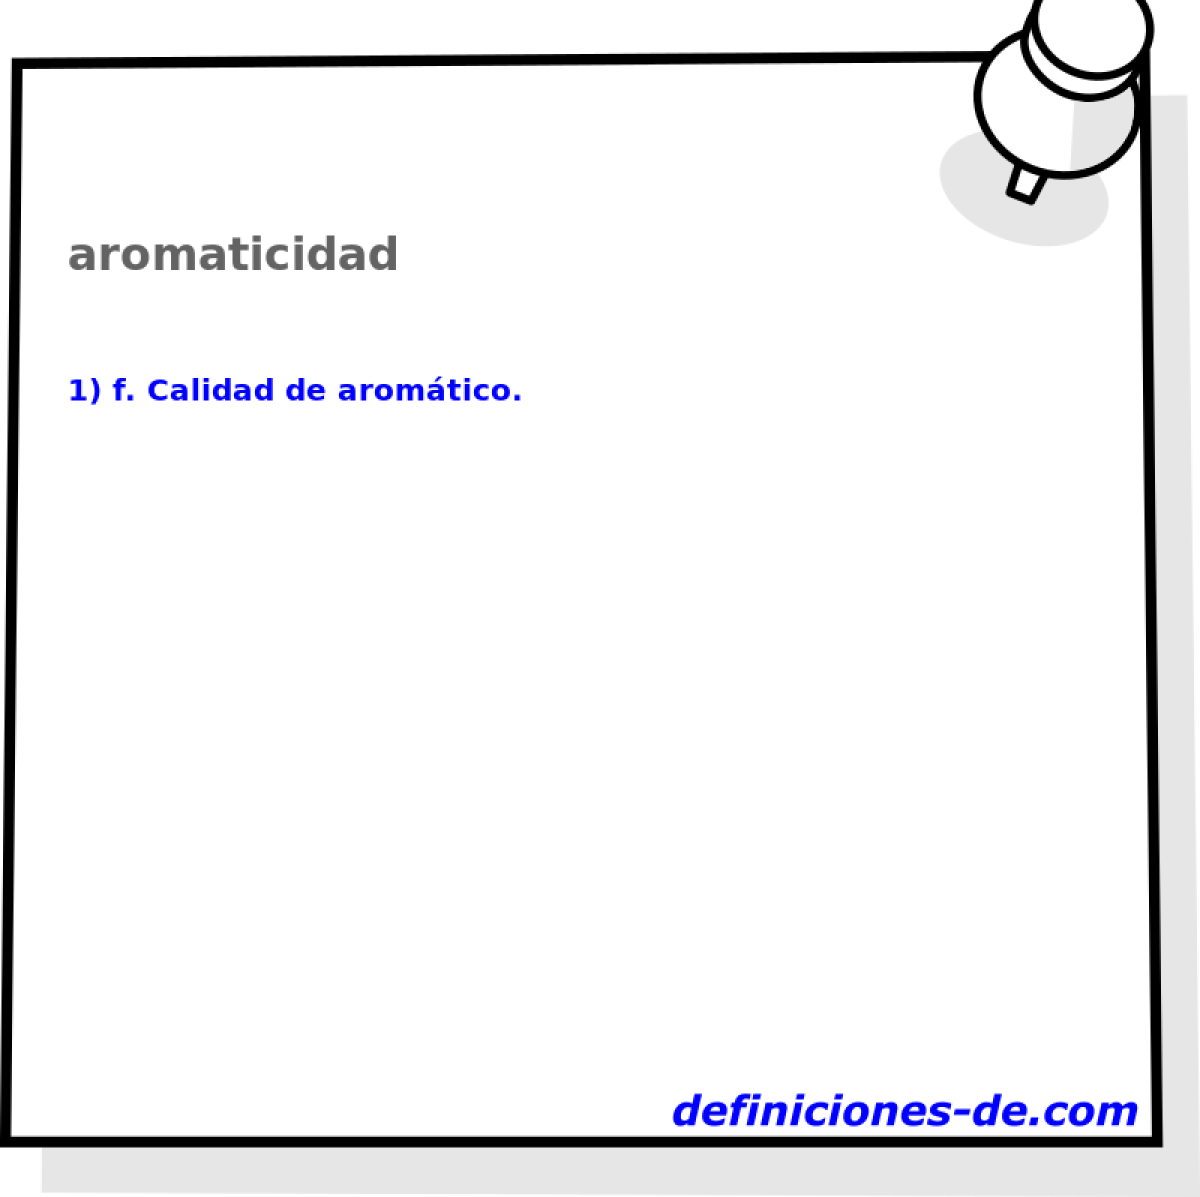 aromaticidad 